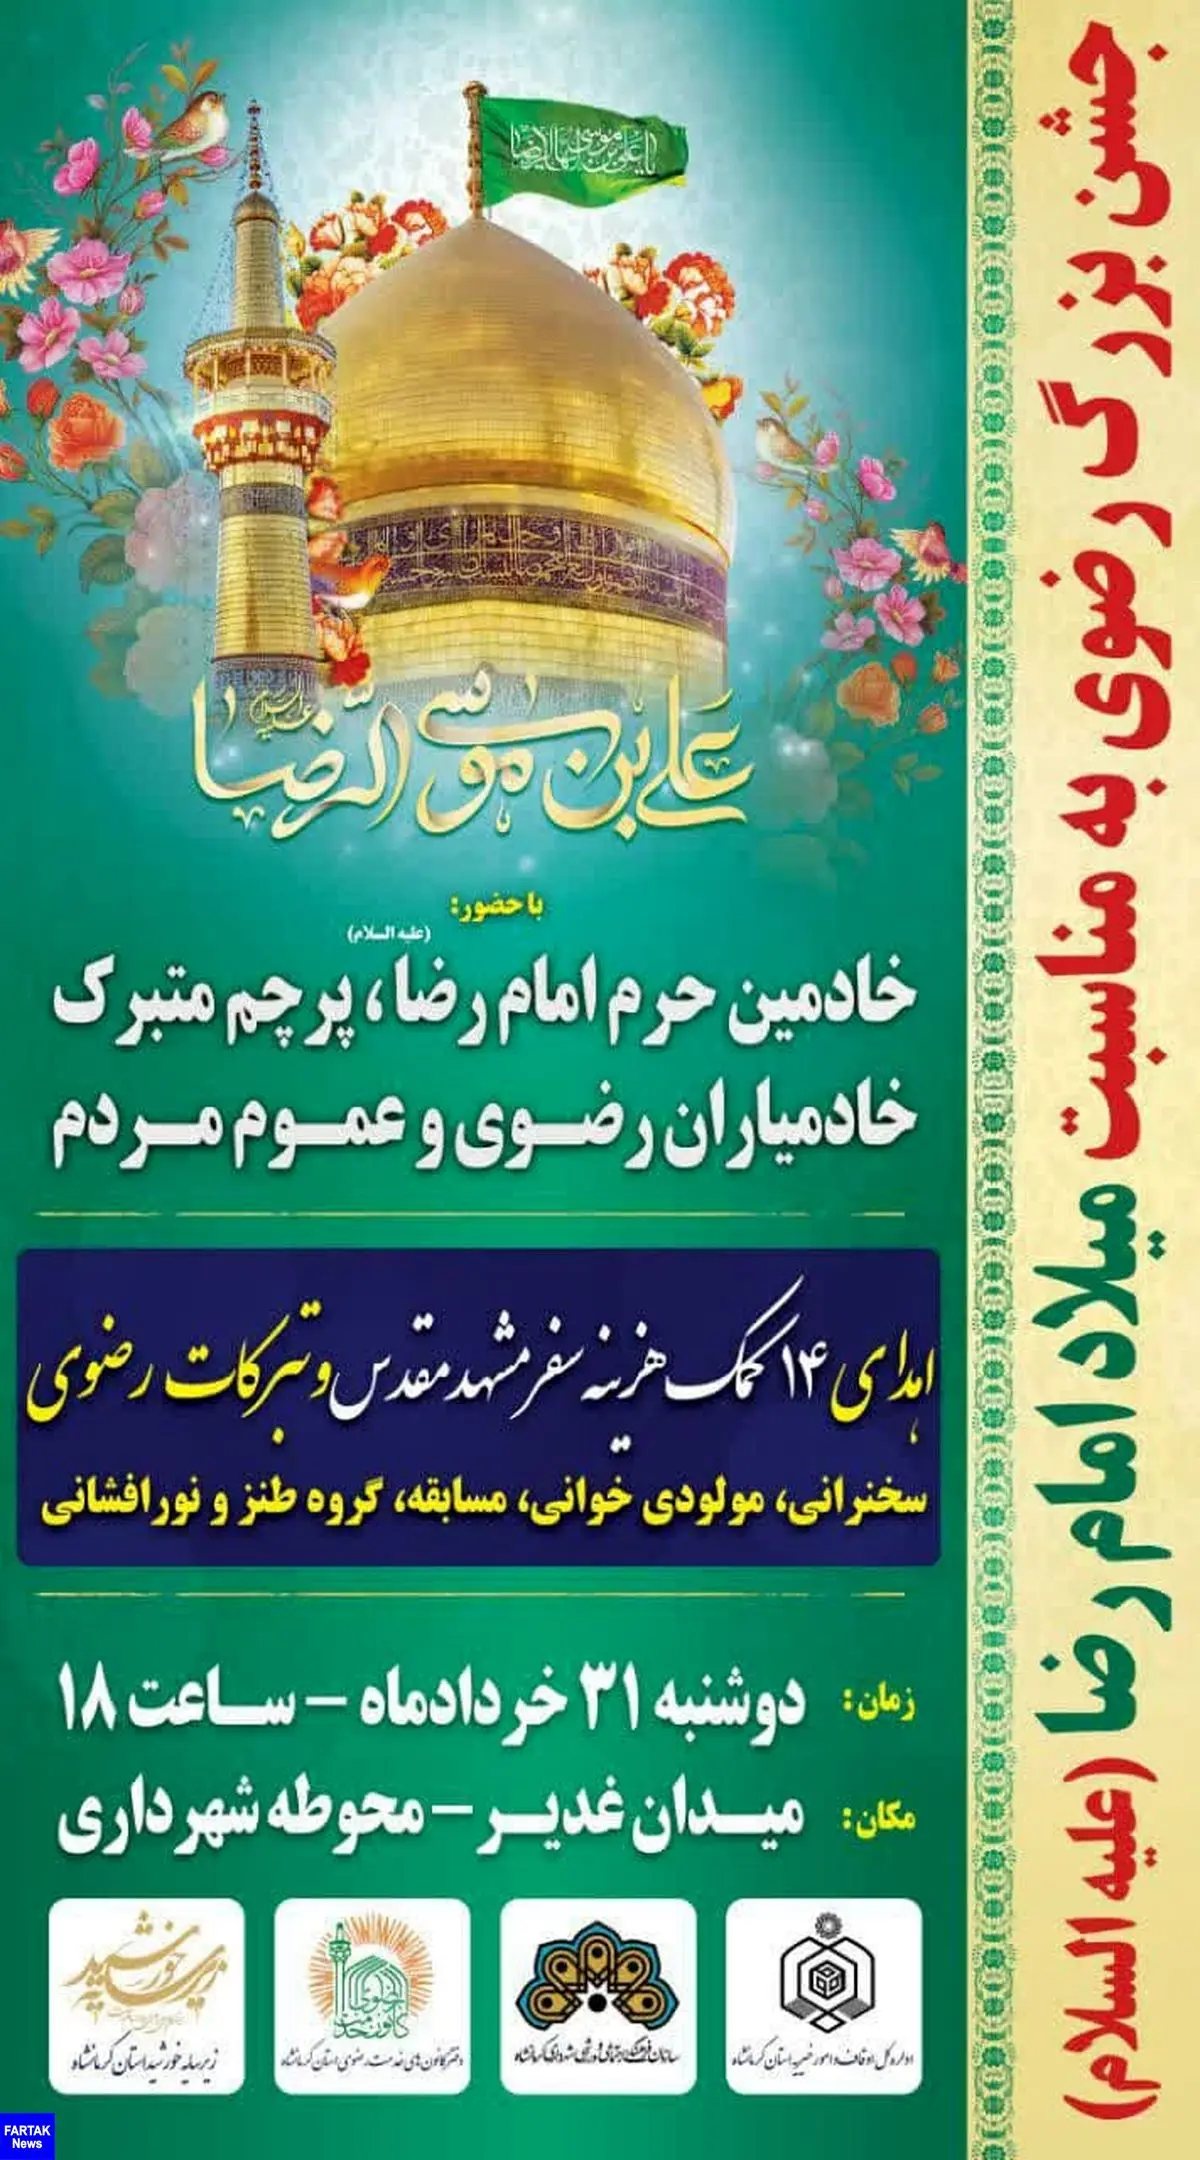 جشن بزرگ رضوی به مناسبت میلاد امام مهربانی ها در کرمانشاه